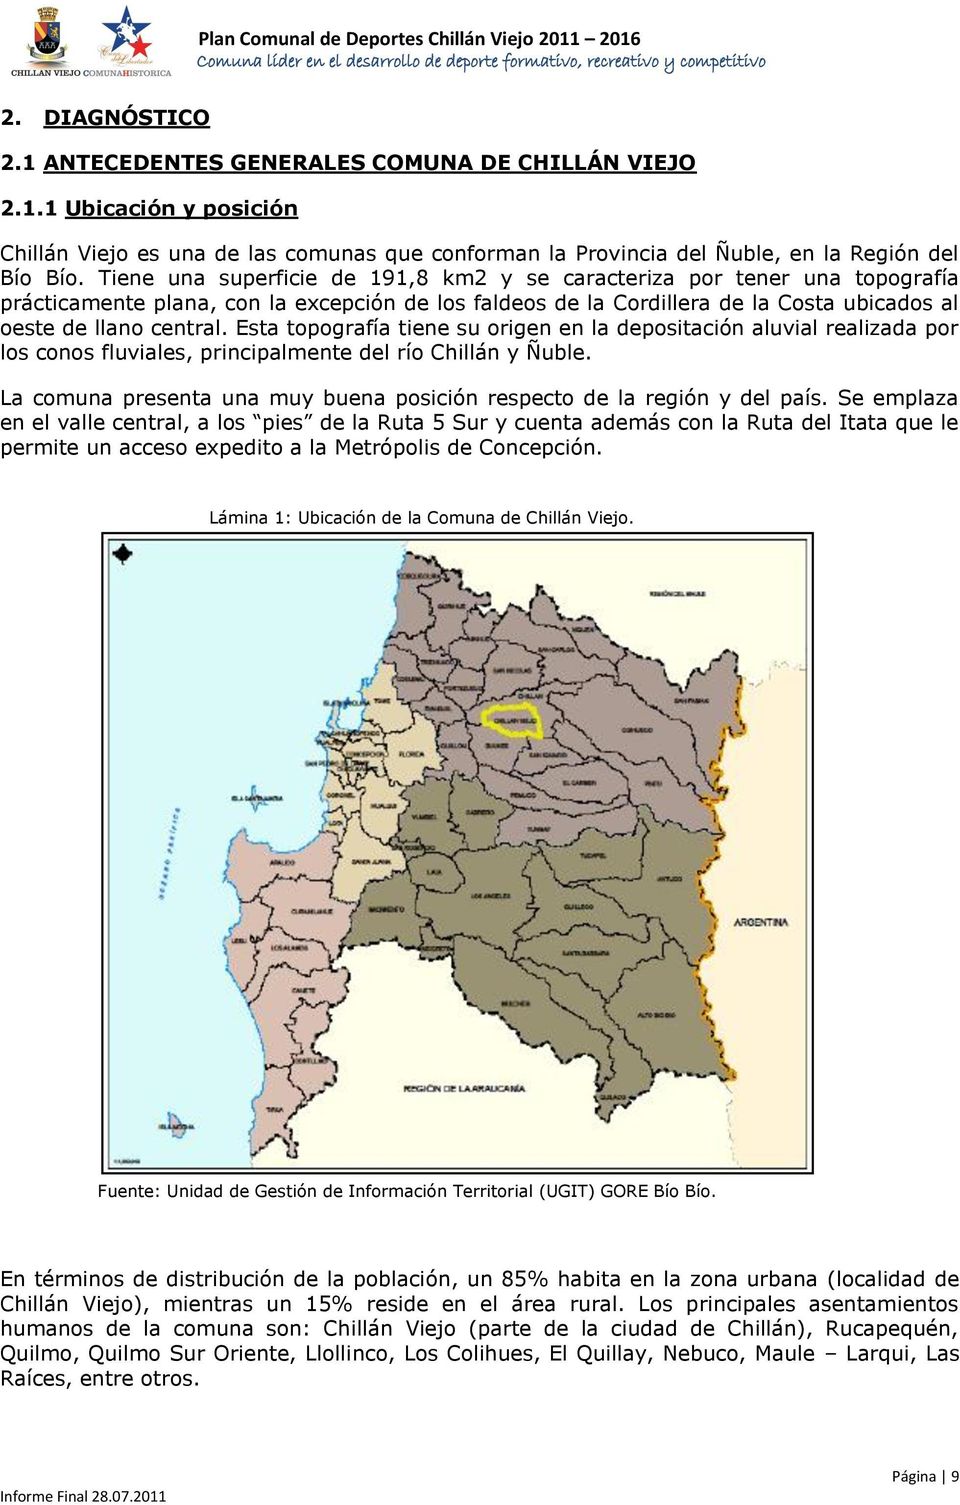 Esta topografía tiene su origen en la depositación aluvial realizada por los conos fluviales, principalmente del río Chillán y Ñuble.